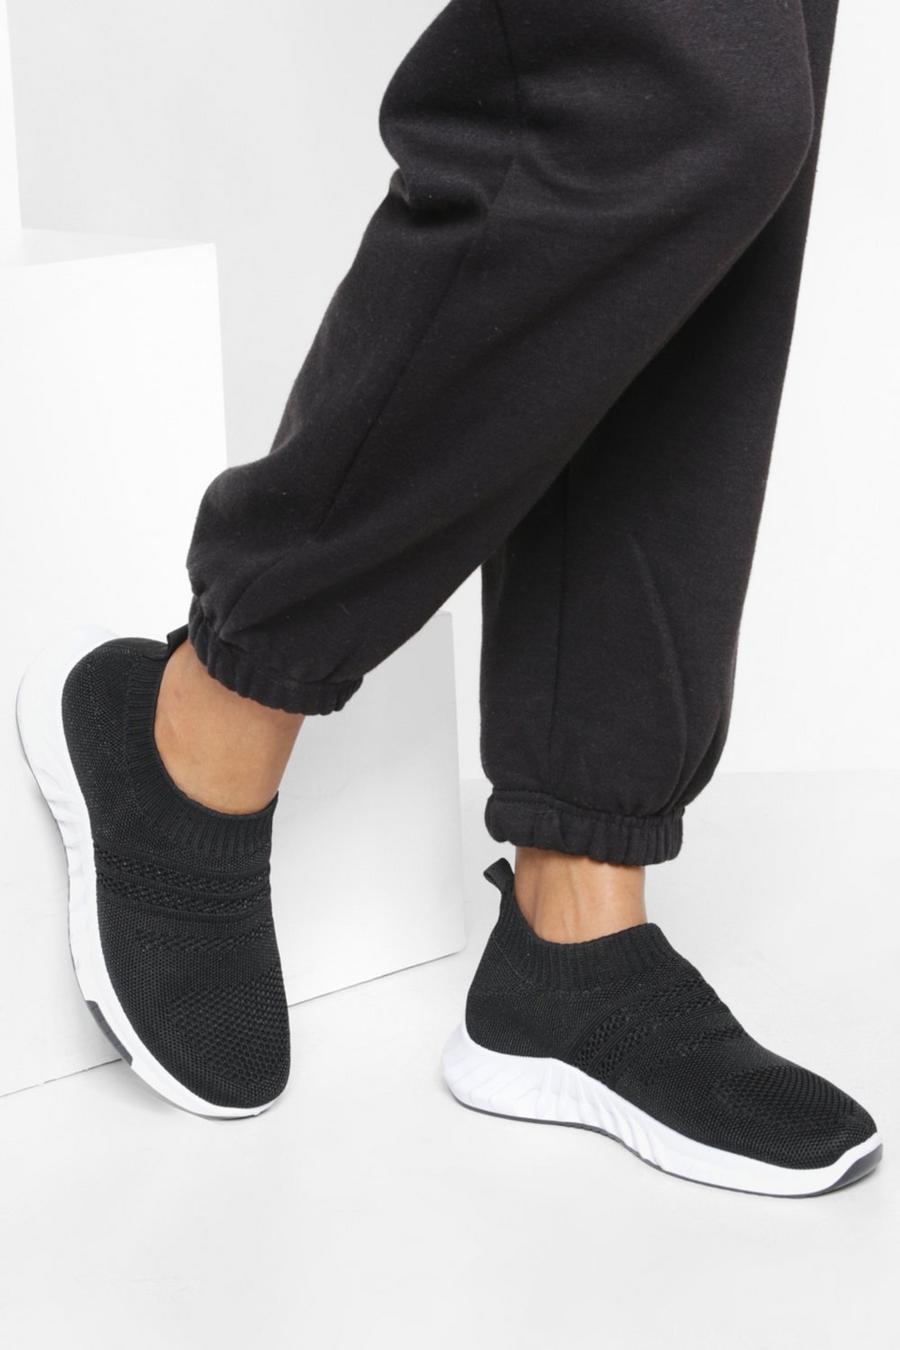 Zapatillas deportivas bajas estilo calcetín de holgura ancha y tela, Black negro